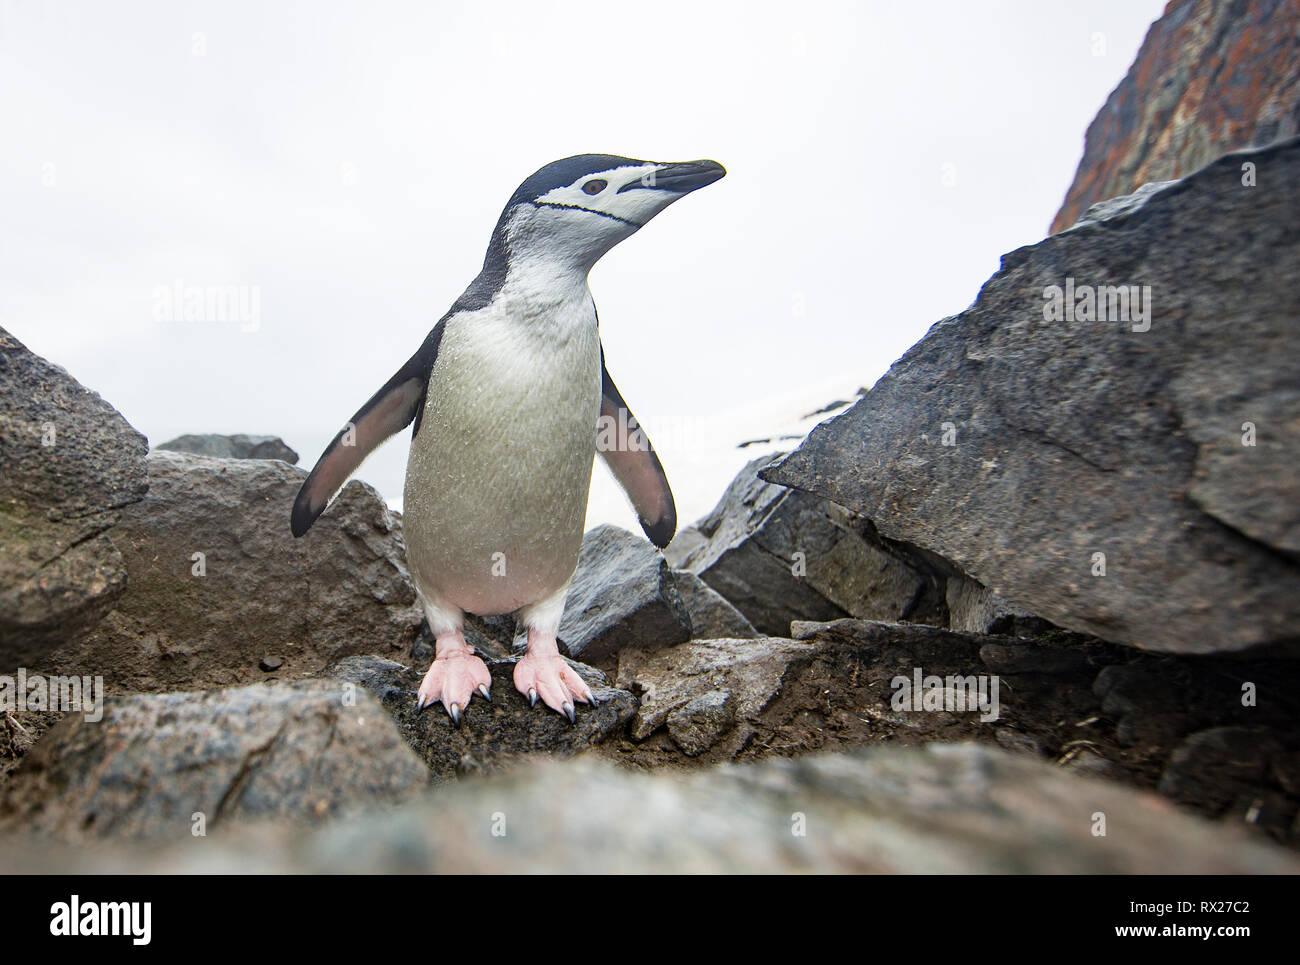 Un pingüino de Chinstrap (Pygoscelis antarcticus) investiga una cámara remota cerca de una autopista de pingüinos en la isla Half Moon. La Península Antártica, Antártida Foto de stock